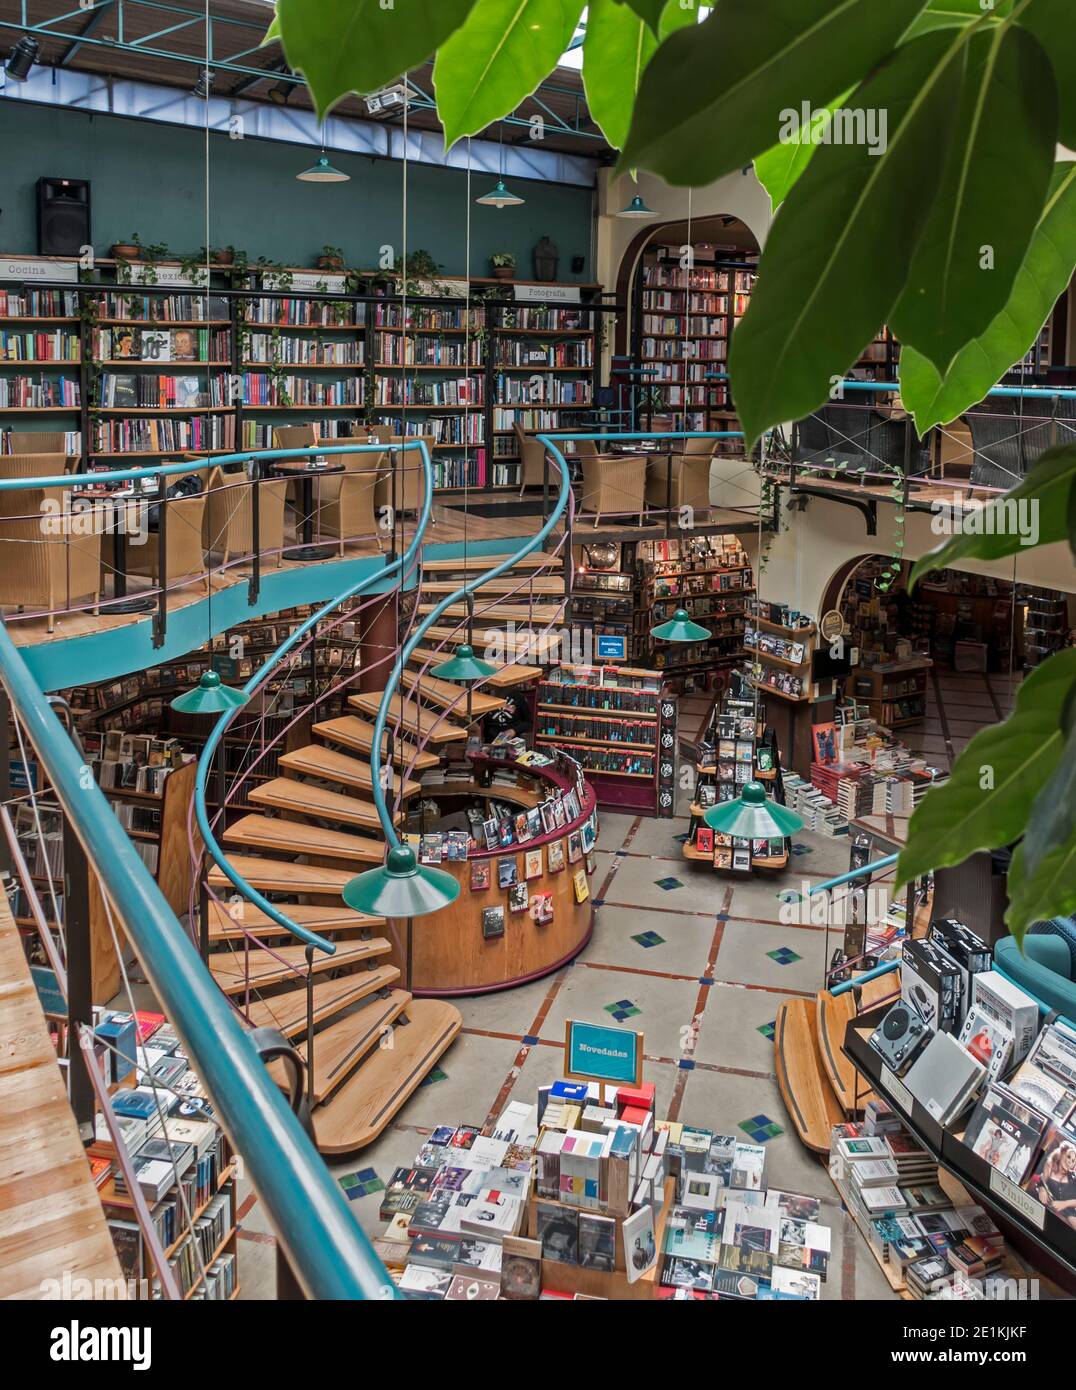 El Pendulo cafeteria and bookstore, Polanco, Mexico City, Mexico Stock Photo